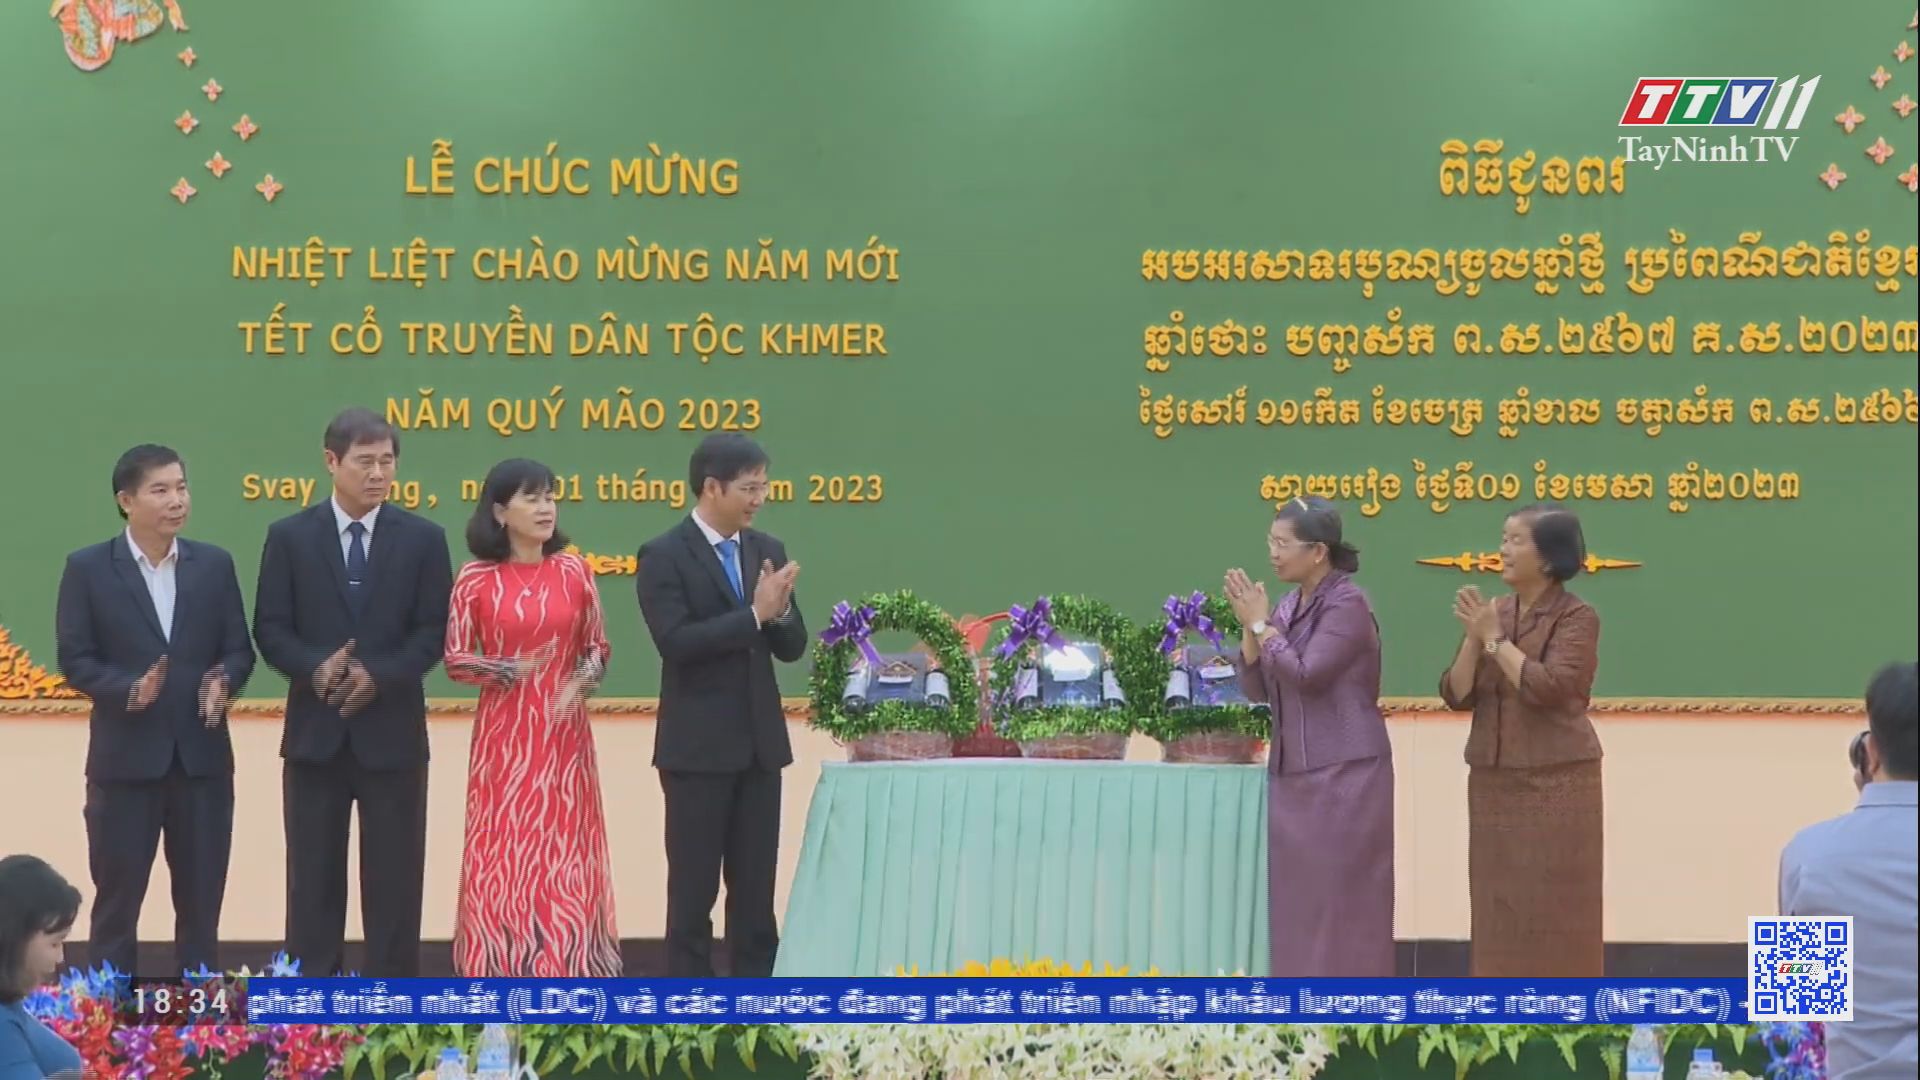 Đoàn lãnh đạo tỉnh Tây Ninh chúc mừng Tết cổ truyền dân tộc Khmer | TayNinhTV